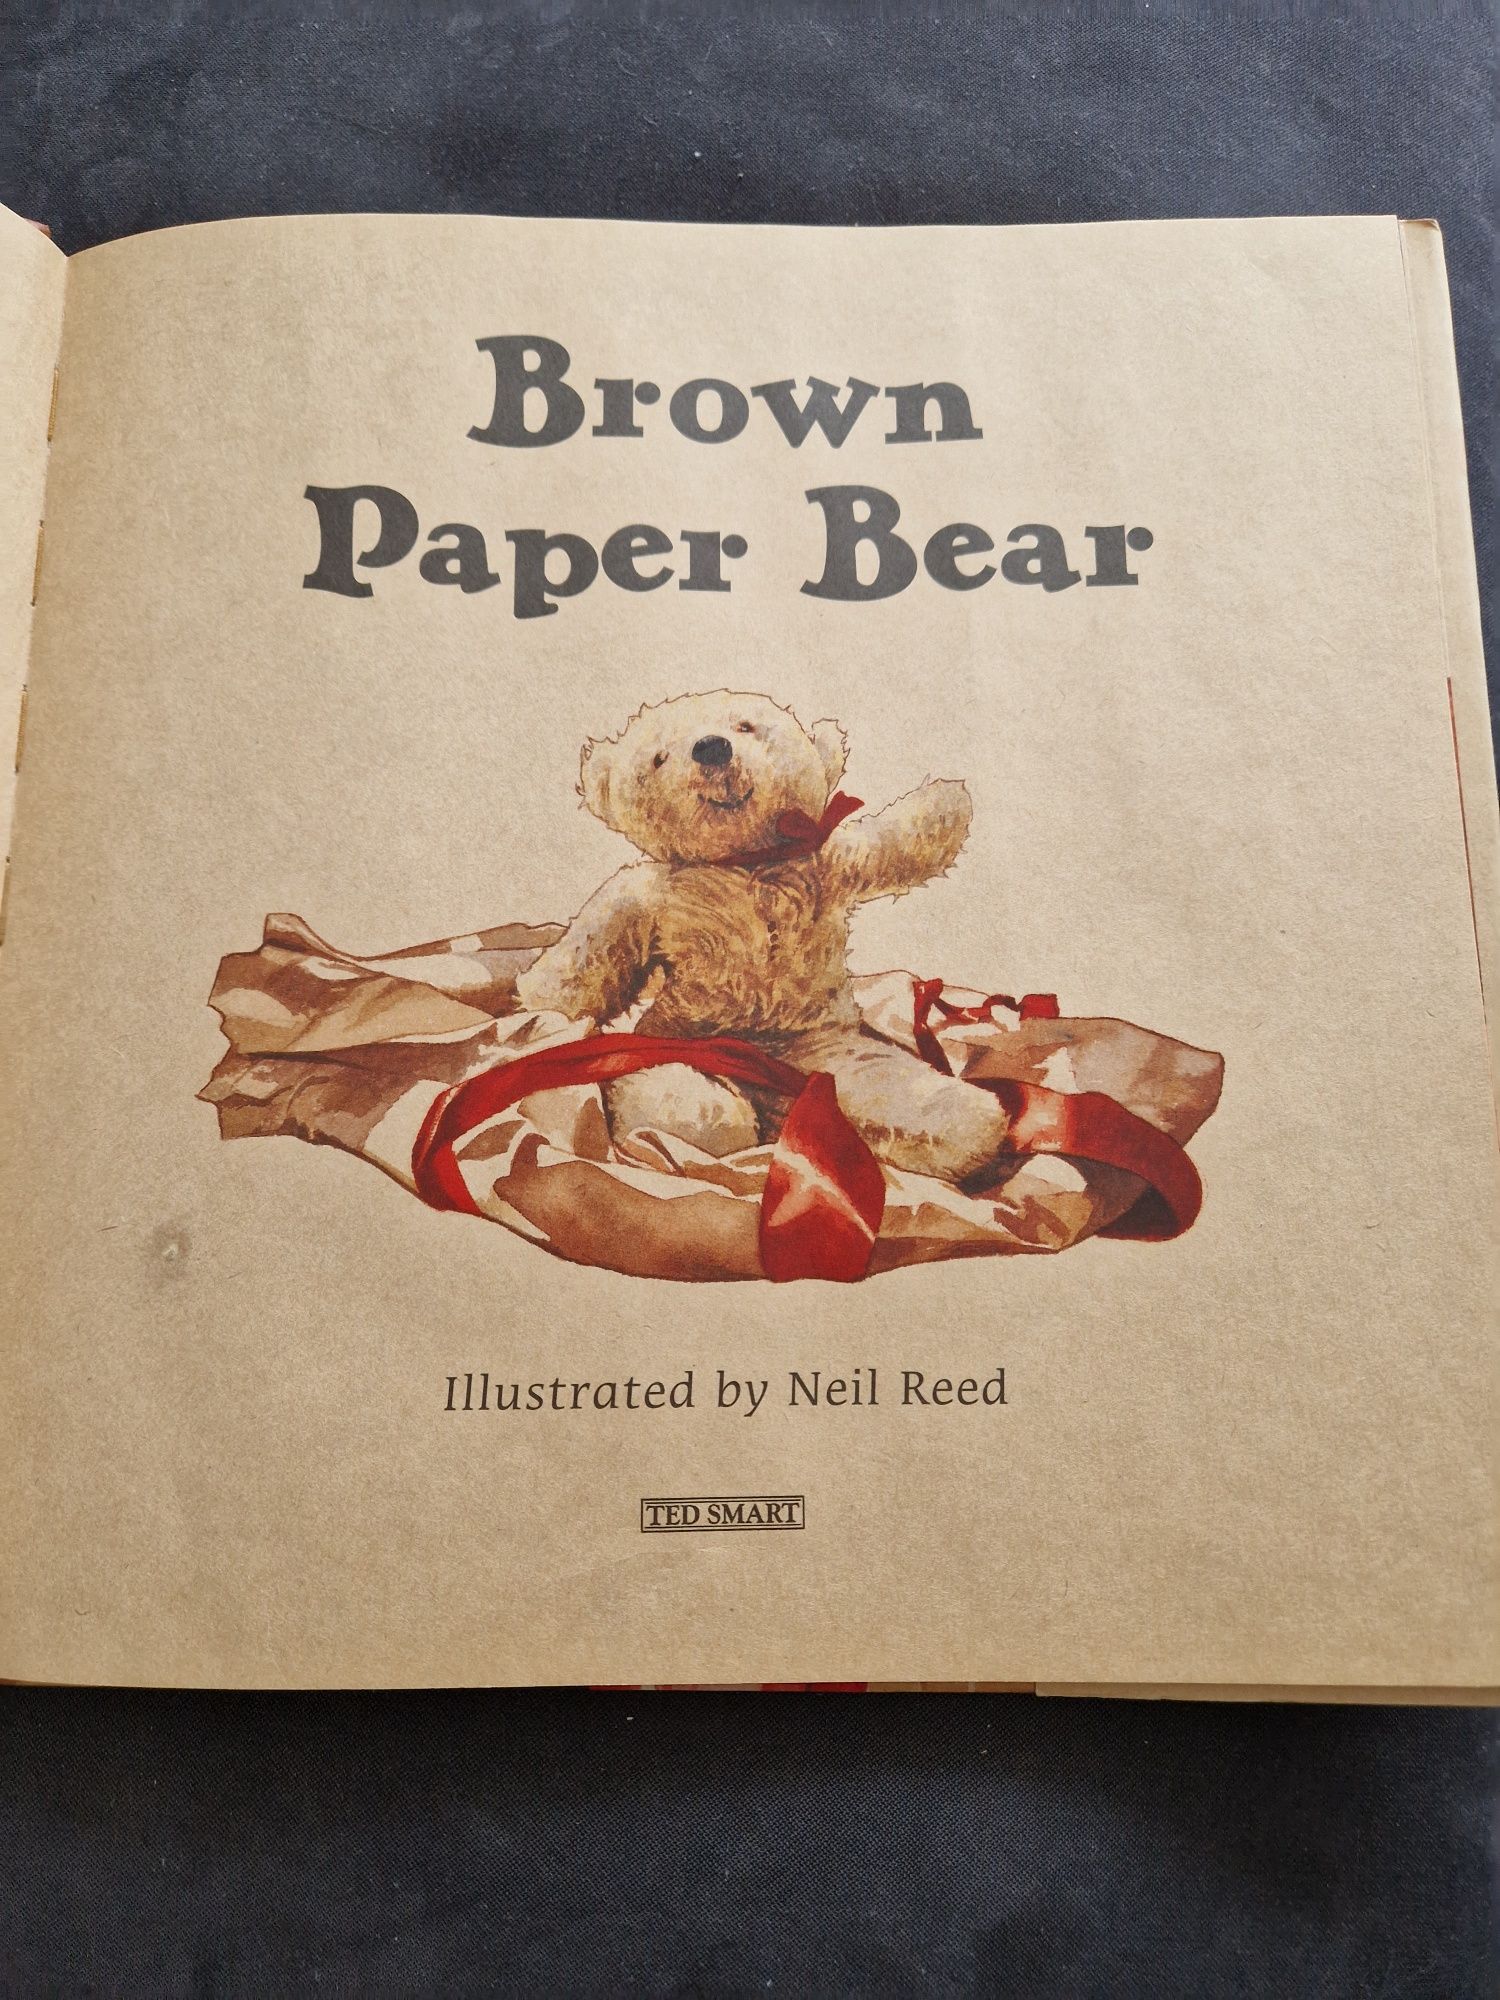 Angielska Książka dla dzieci "Brown Paper Bear"